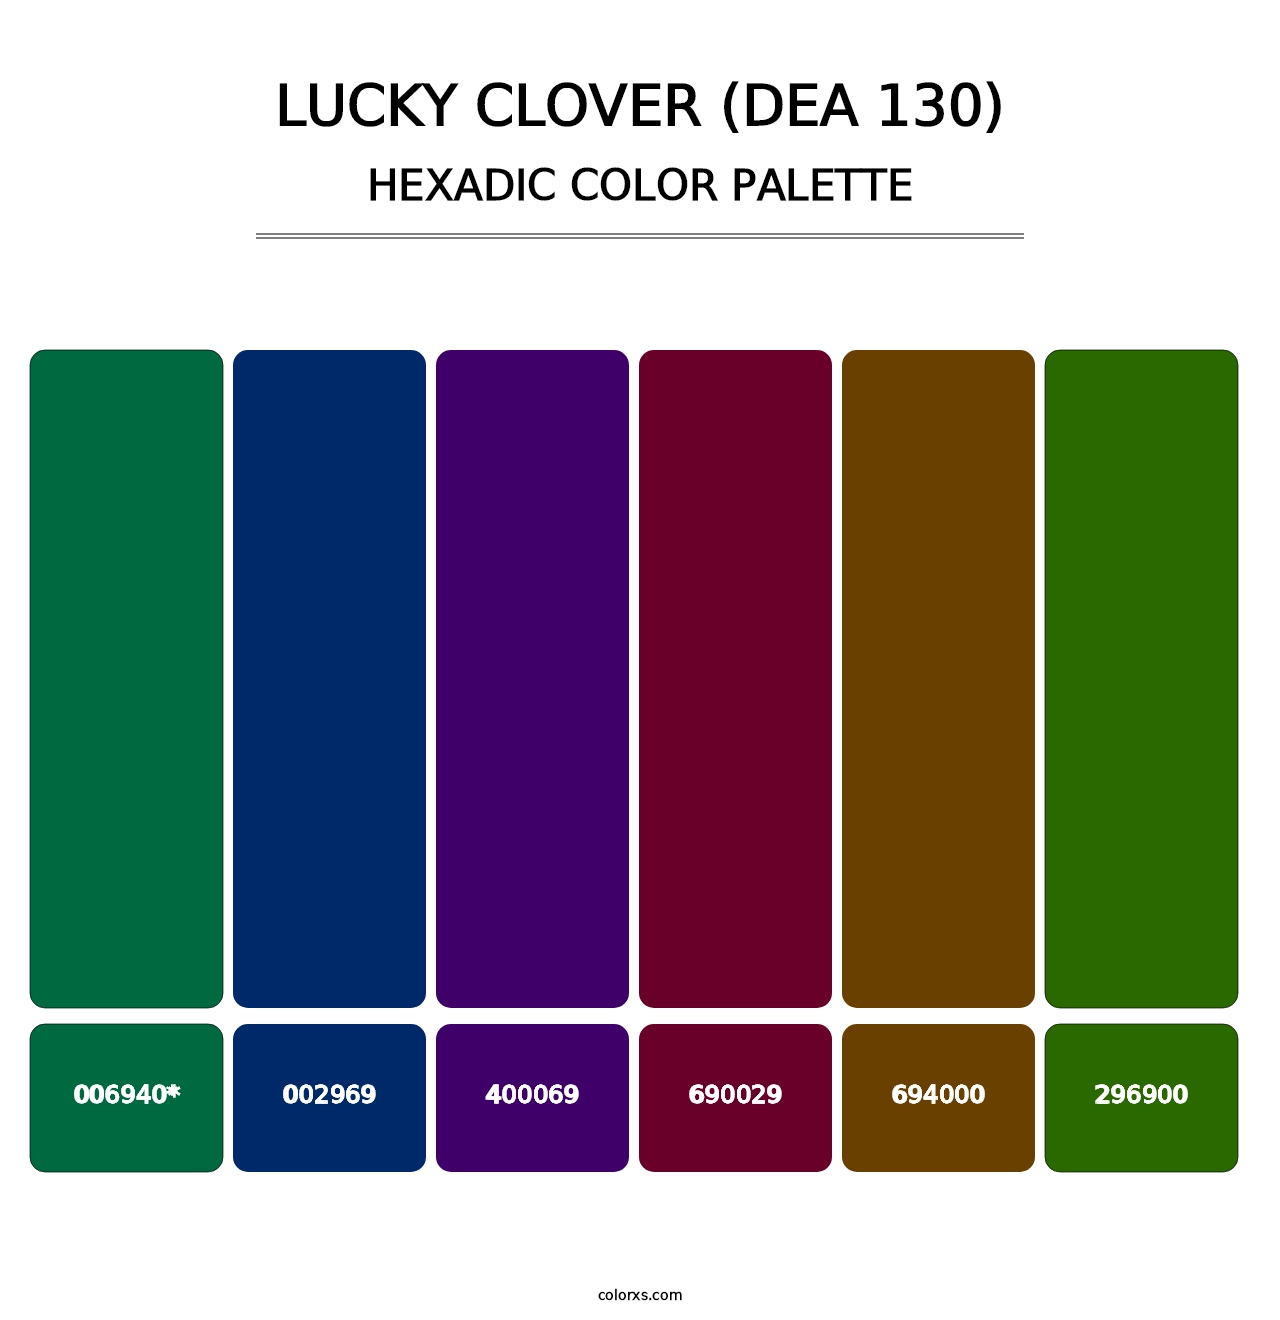 Lucky Clover (DEA 130) - Hexadic Color Palette